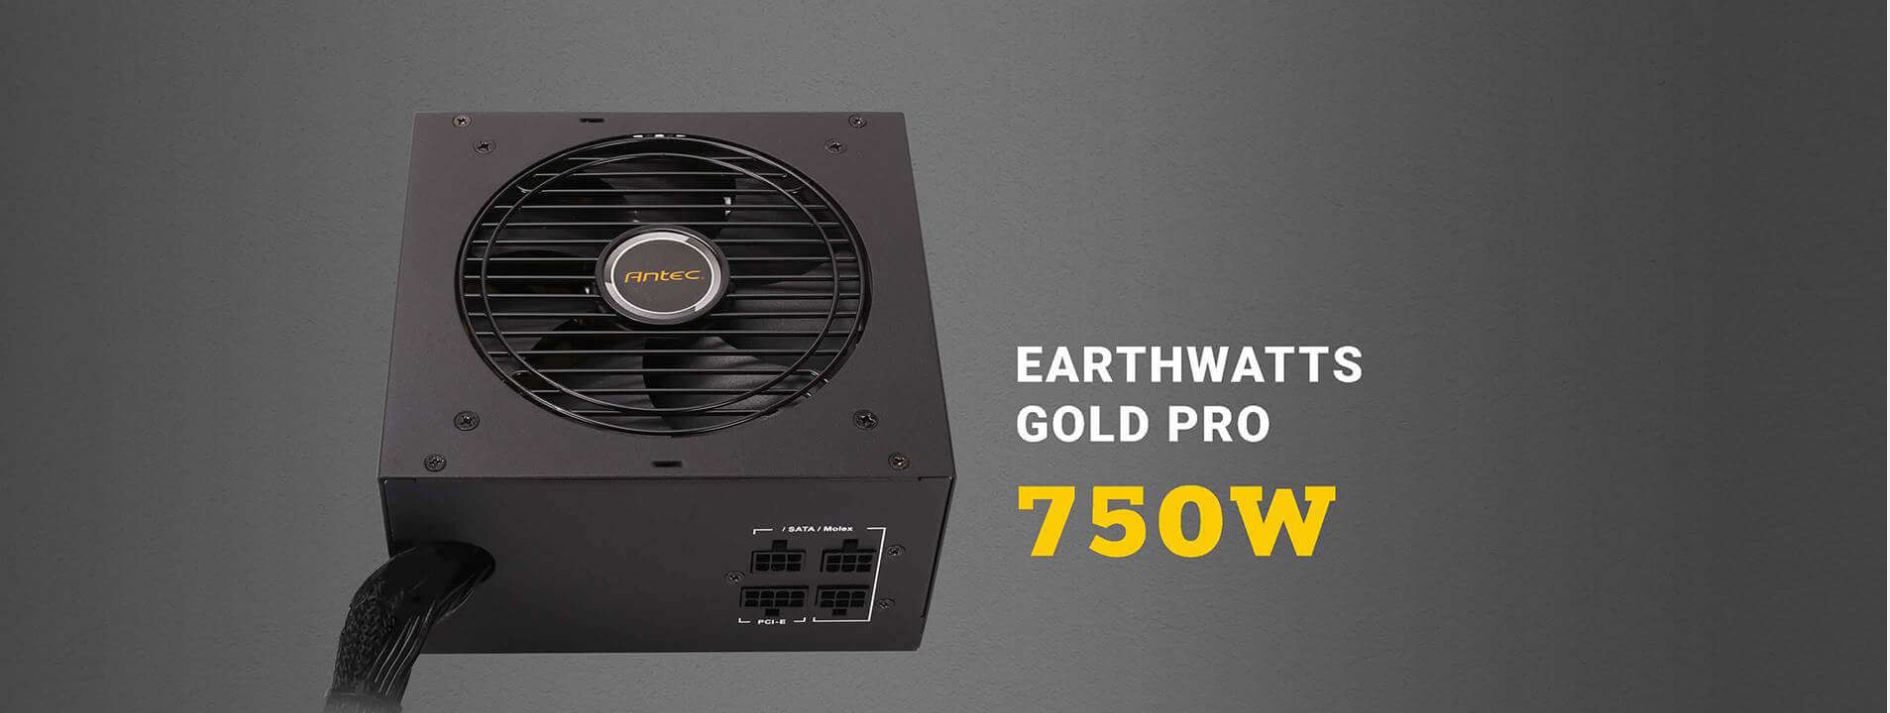 Nguồn ANTEC EA750G PRO-750W (Màu Đen/ 80 Plus Gold)  giới thiệu